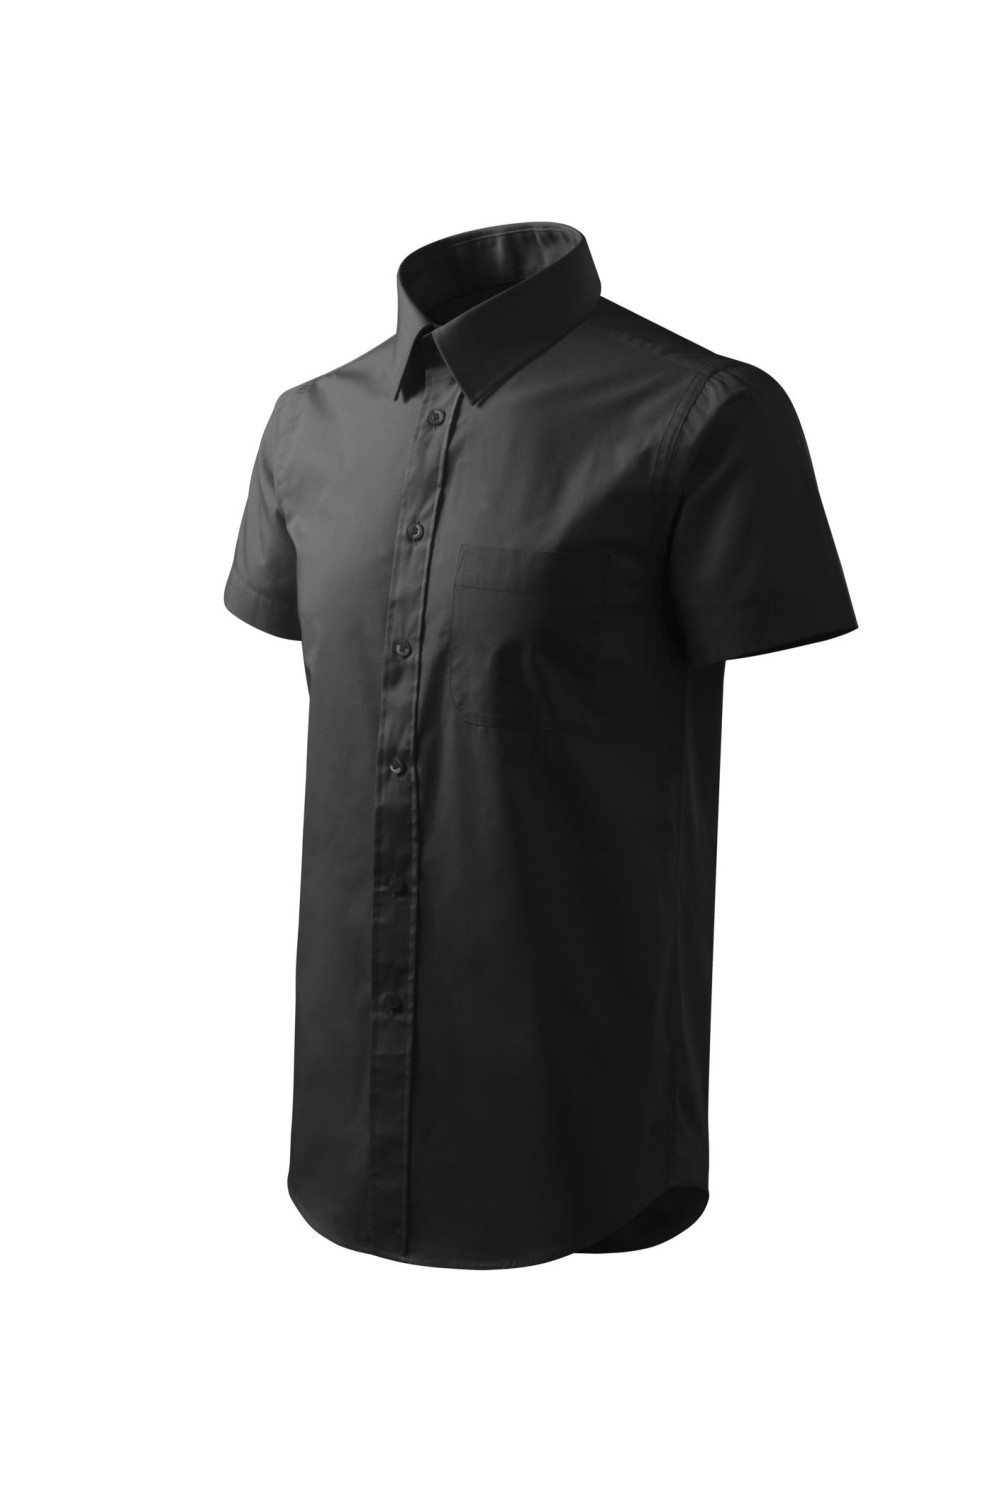 CHIC 207 MALFINI ADLER Koszula męska, krótki rękaw. 100% Bawełna czarny